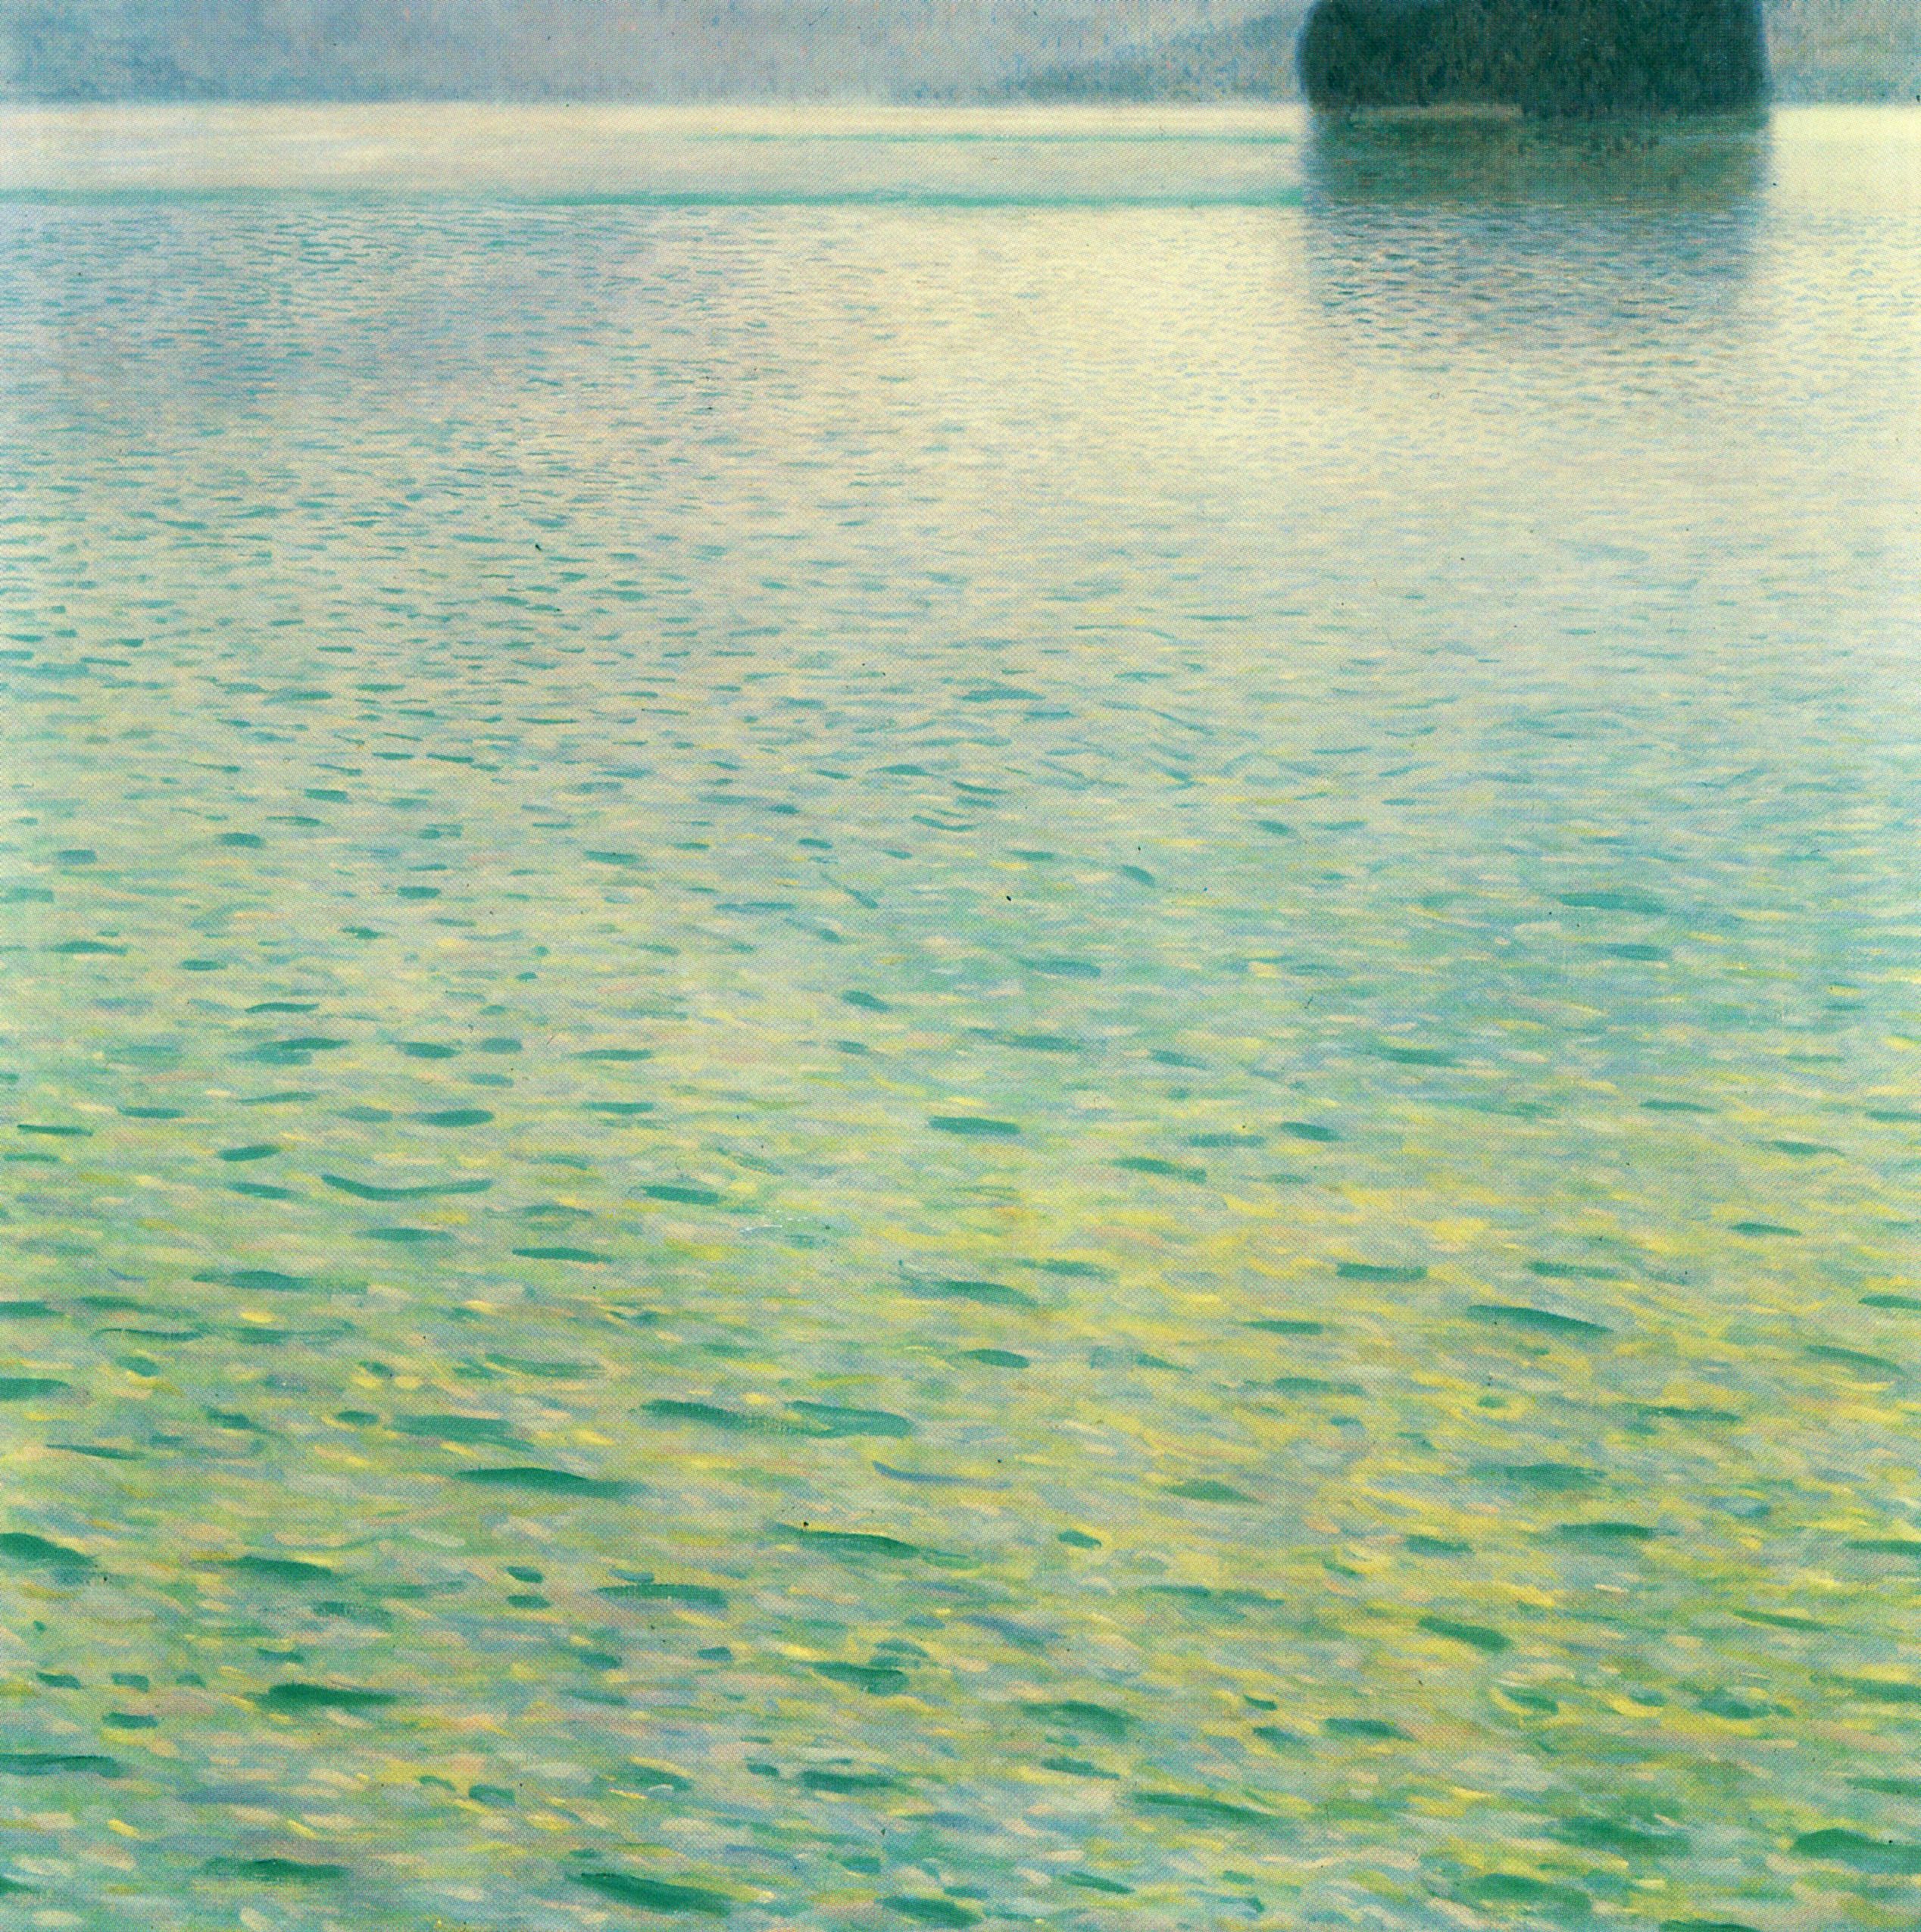 Νησί στην λίμνη Άτερ  by Γκούσταφ Κλιμτ - 1901 - 100 x 100 εκ.  